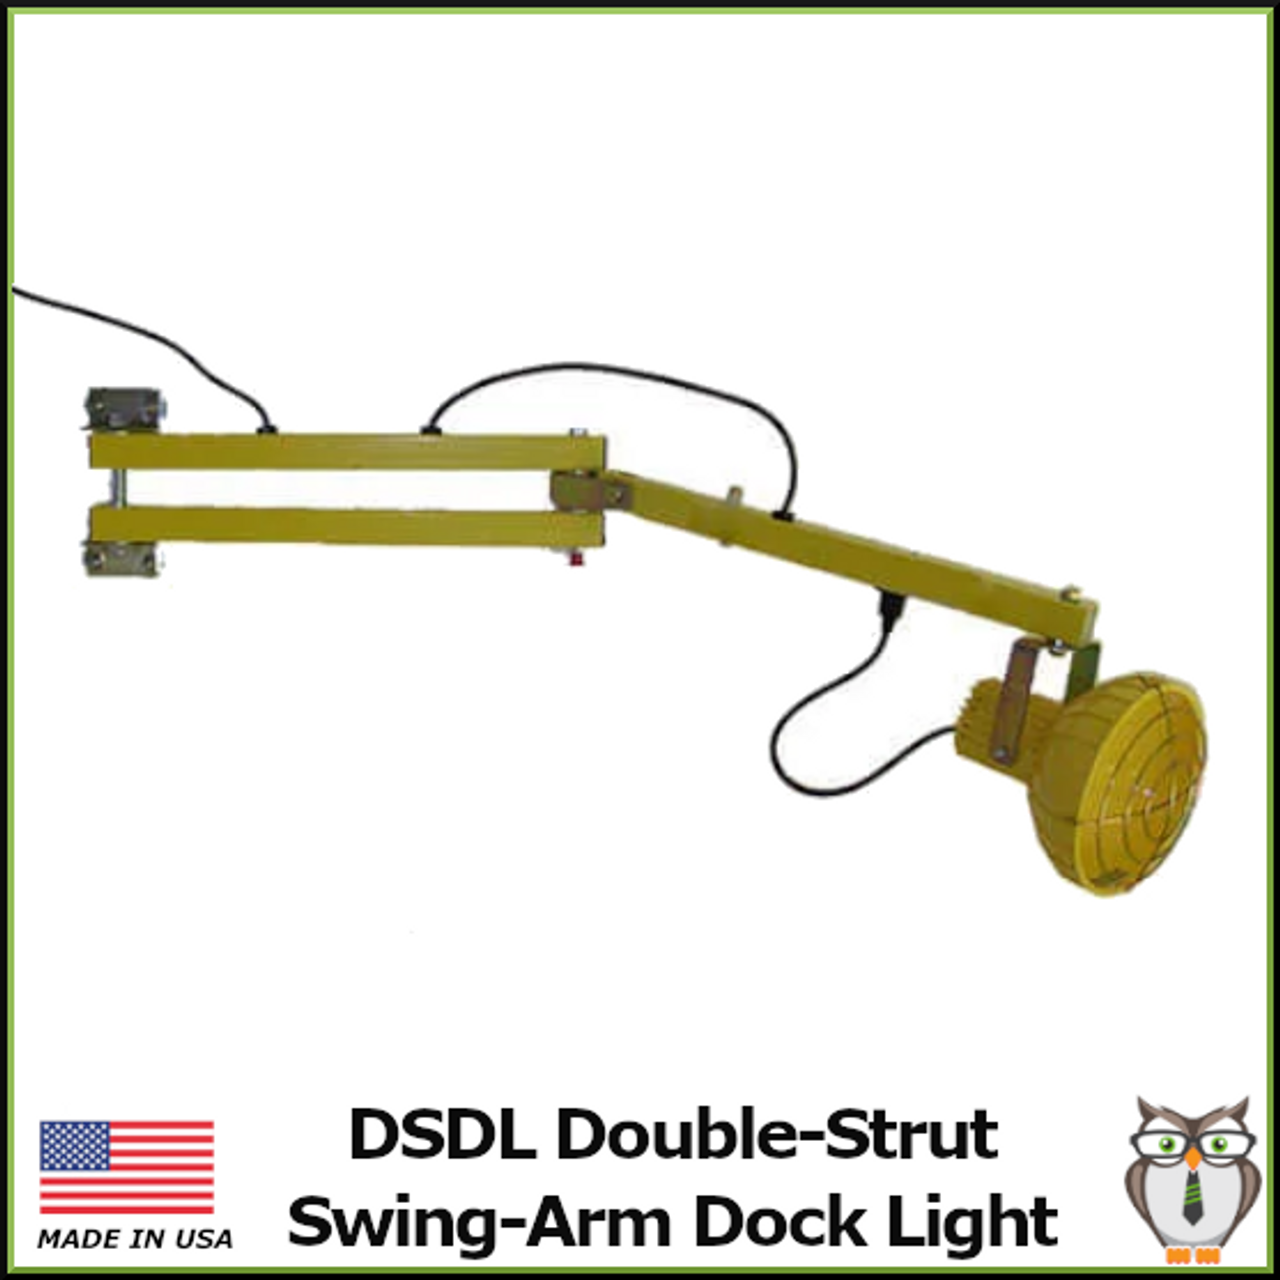 DSDL Double-Strut Swing-Arm Dock Light